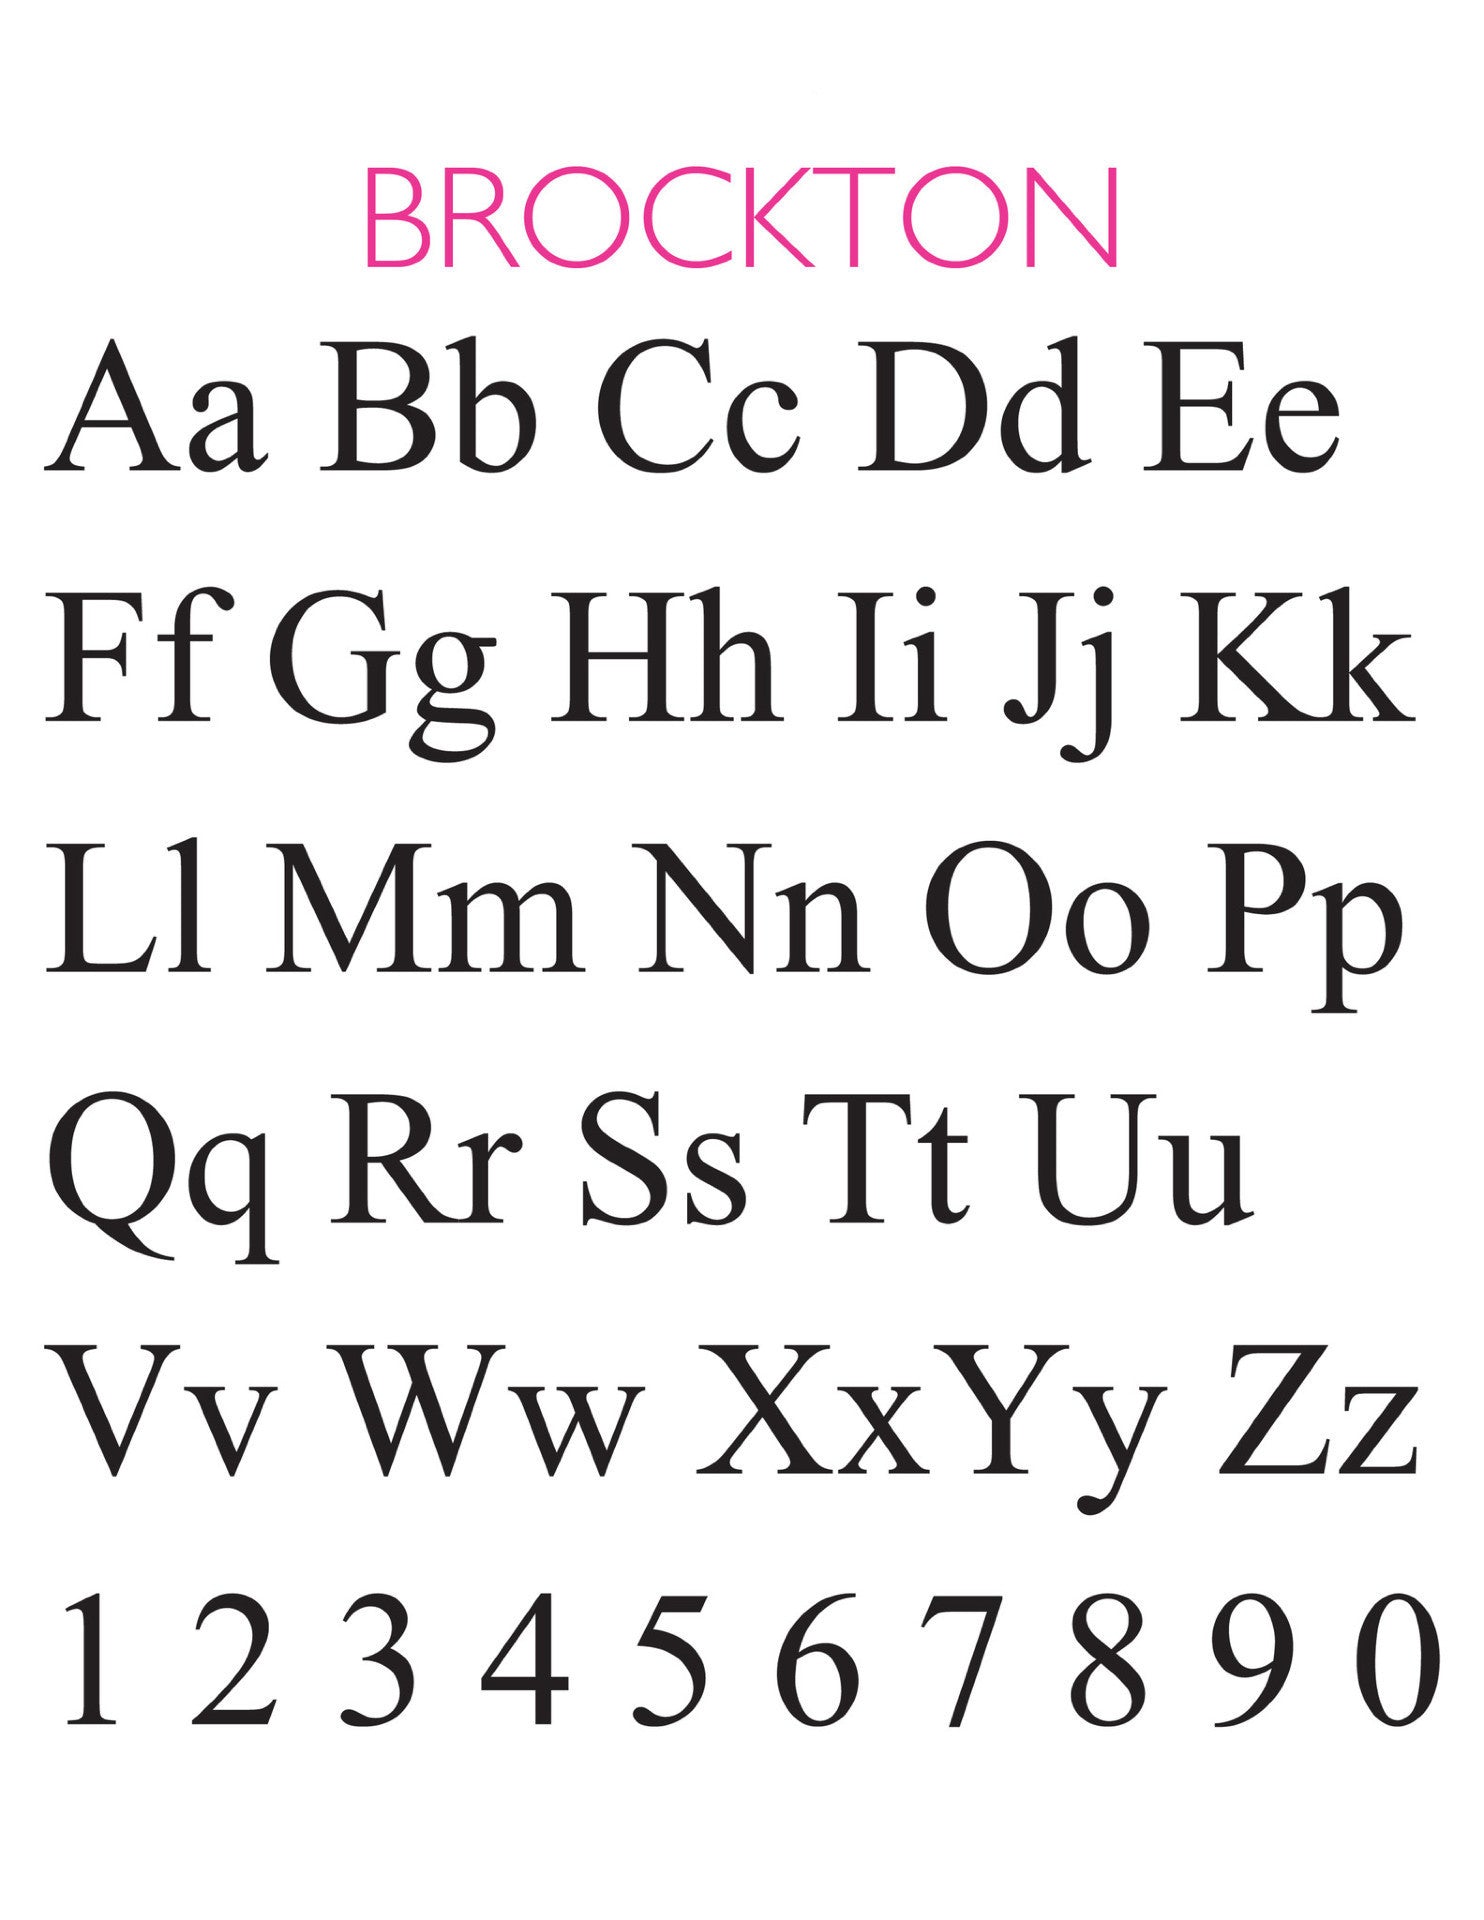 I found this at #moonandlola! - Brockton Block Font Sheet